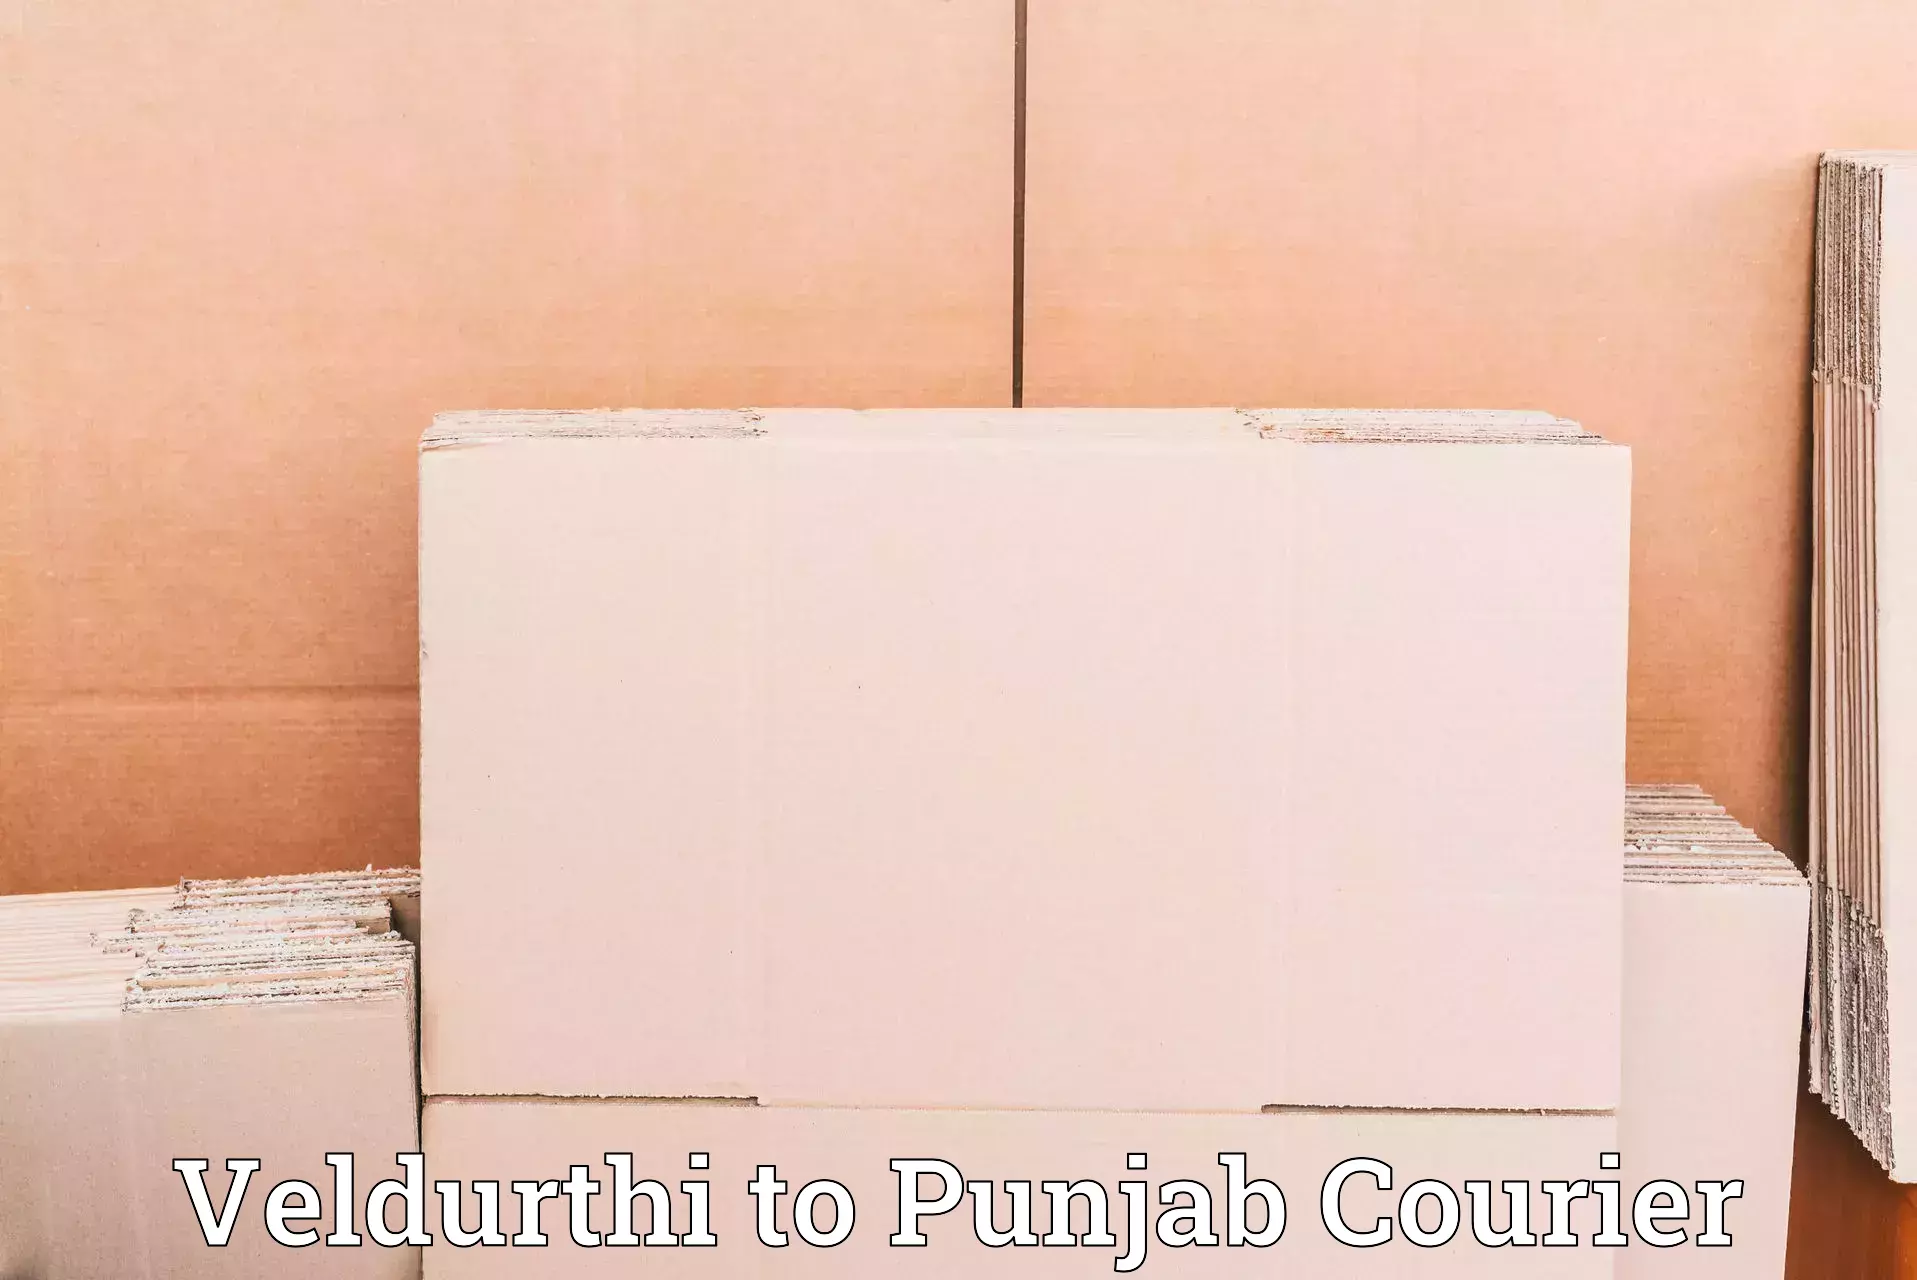 Multi-service courier options Veldurthi to Amritsar